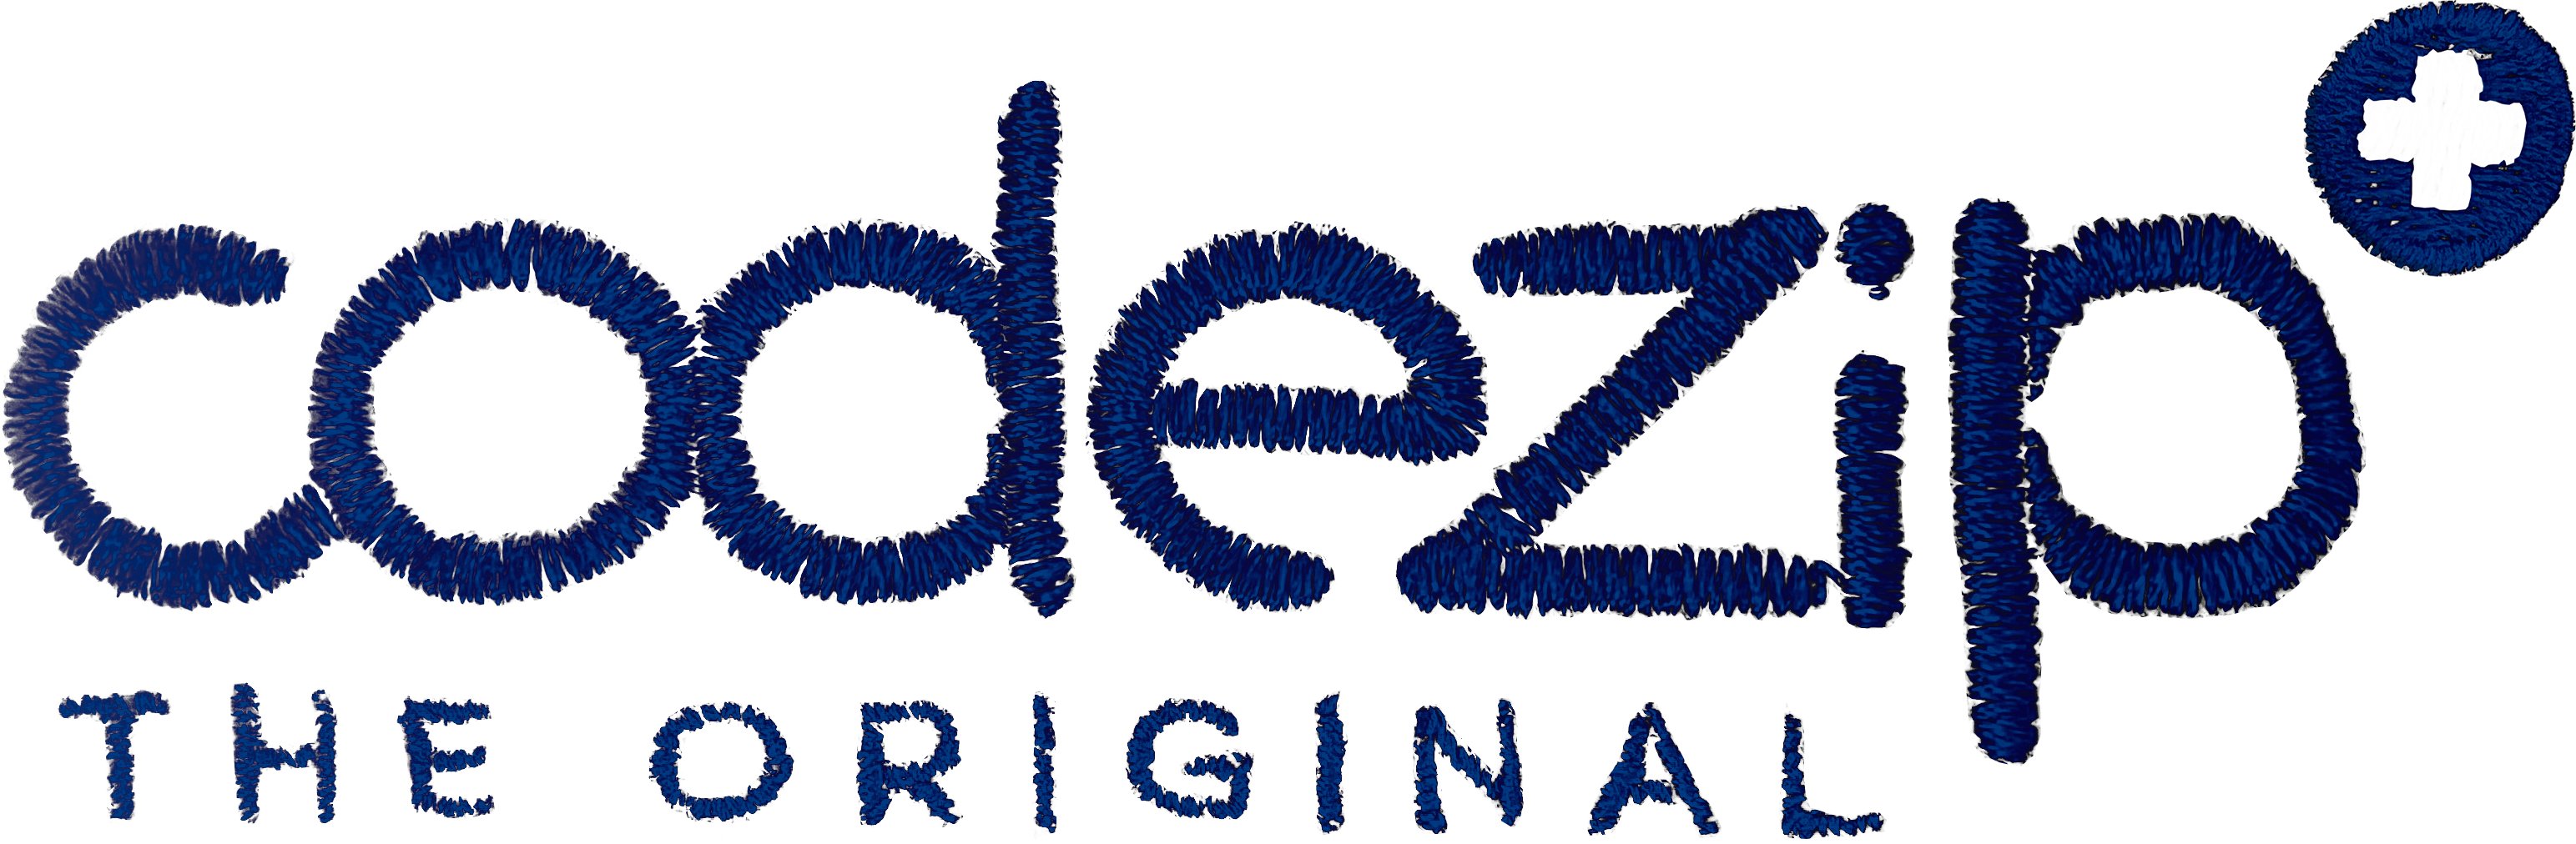 Logo blue french marine